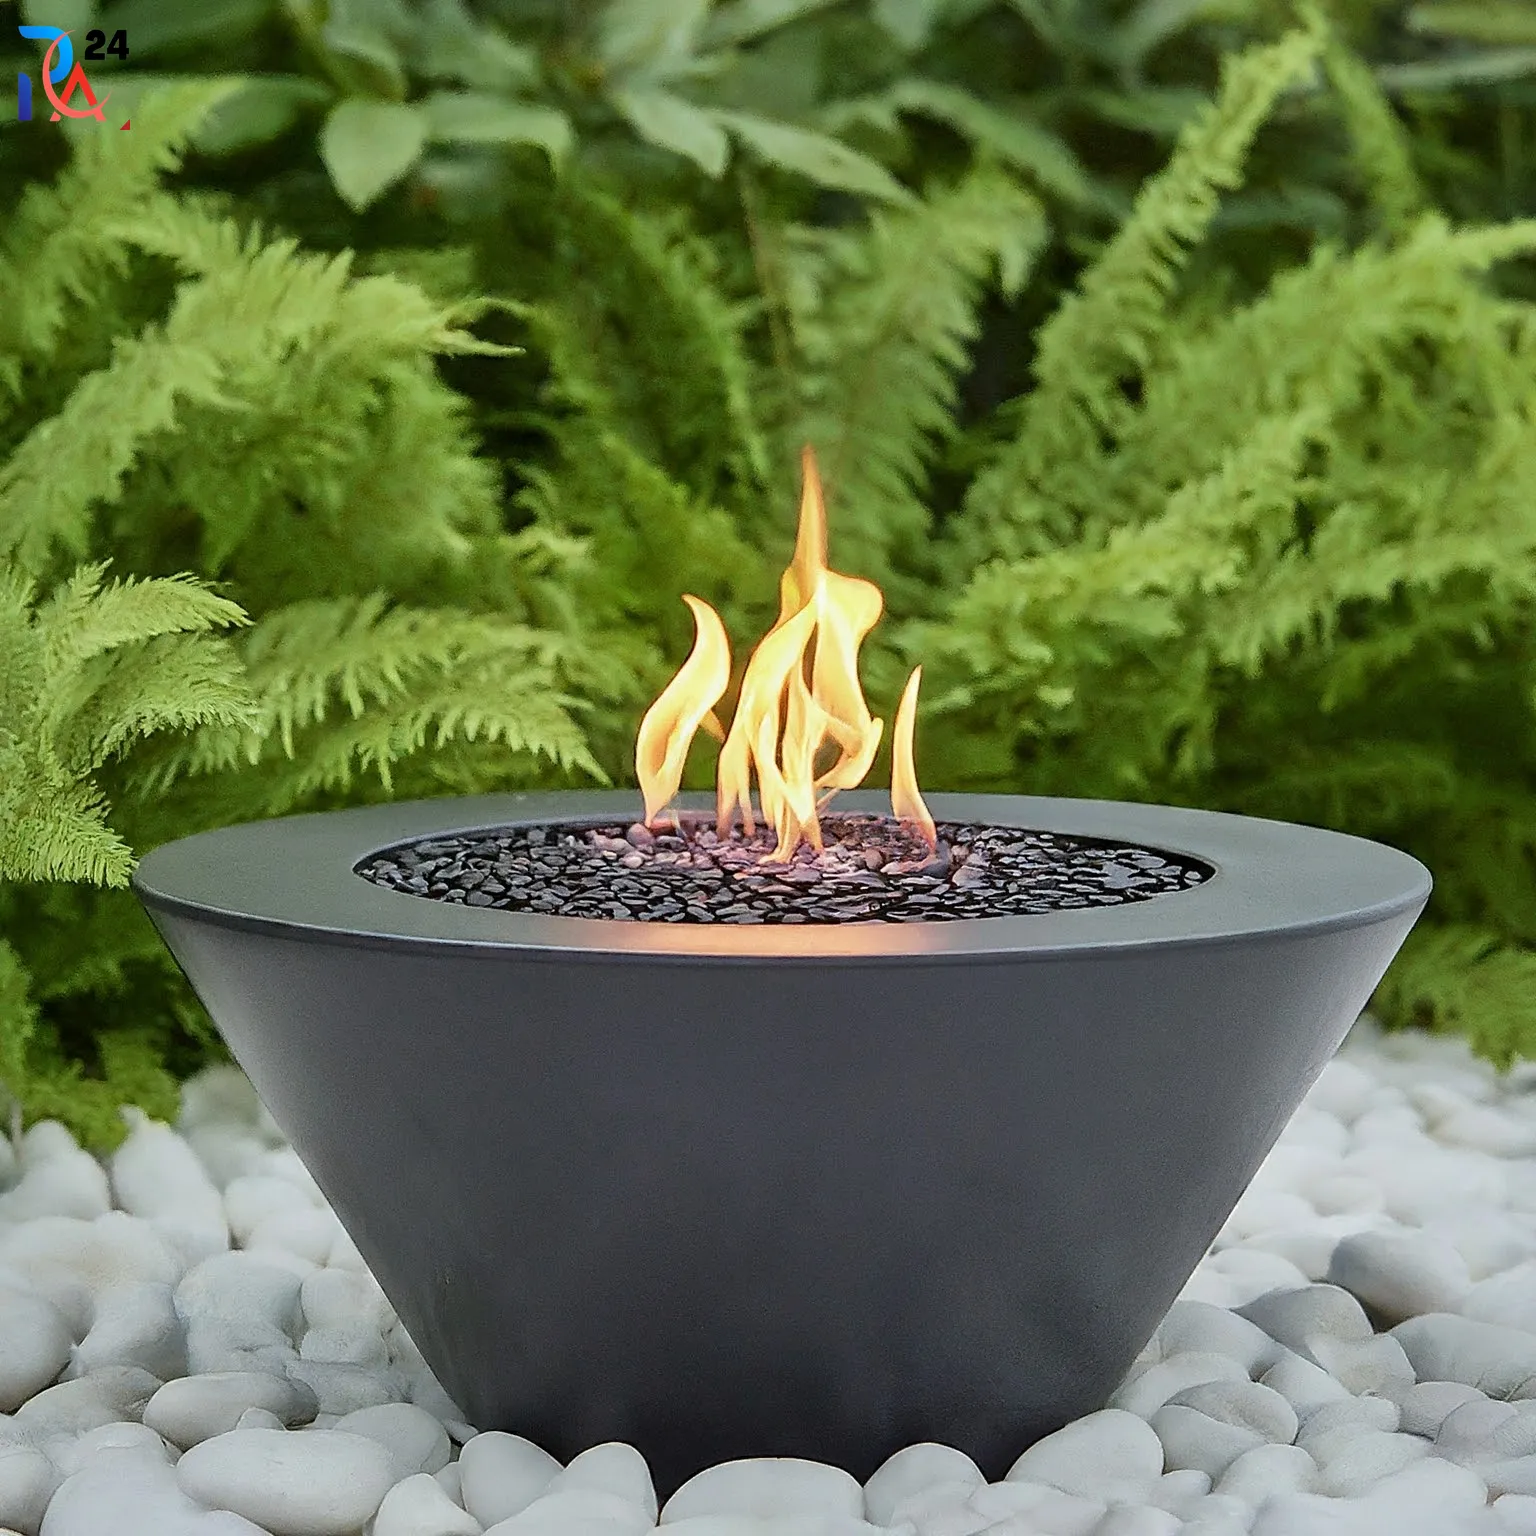 Gel Fuel Fire Pits Garden Ideas (3)